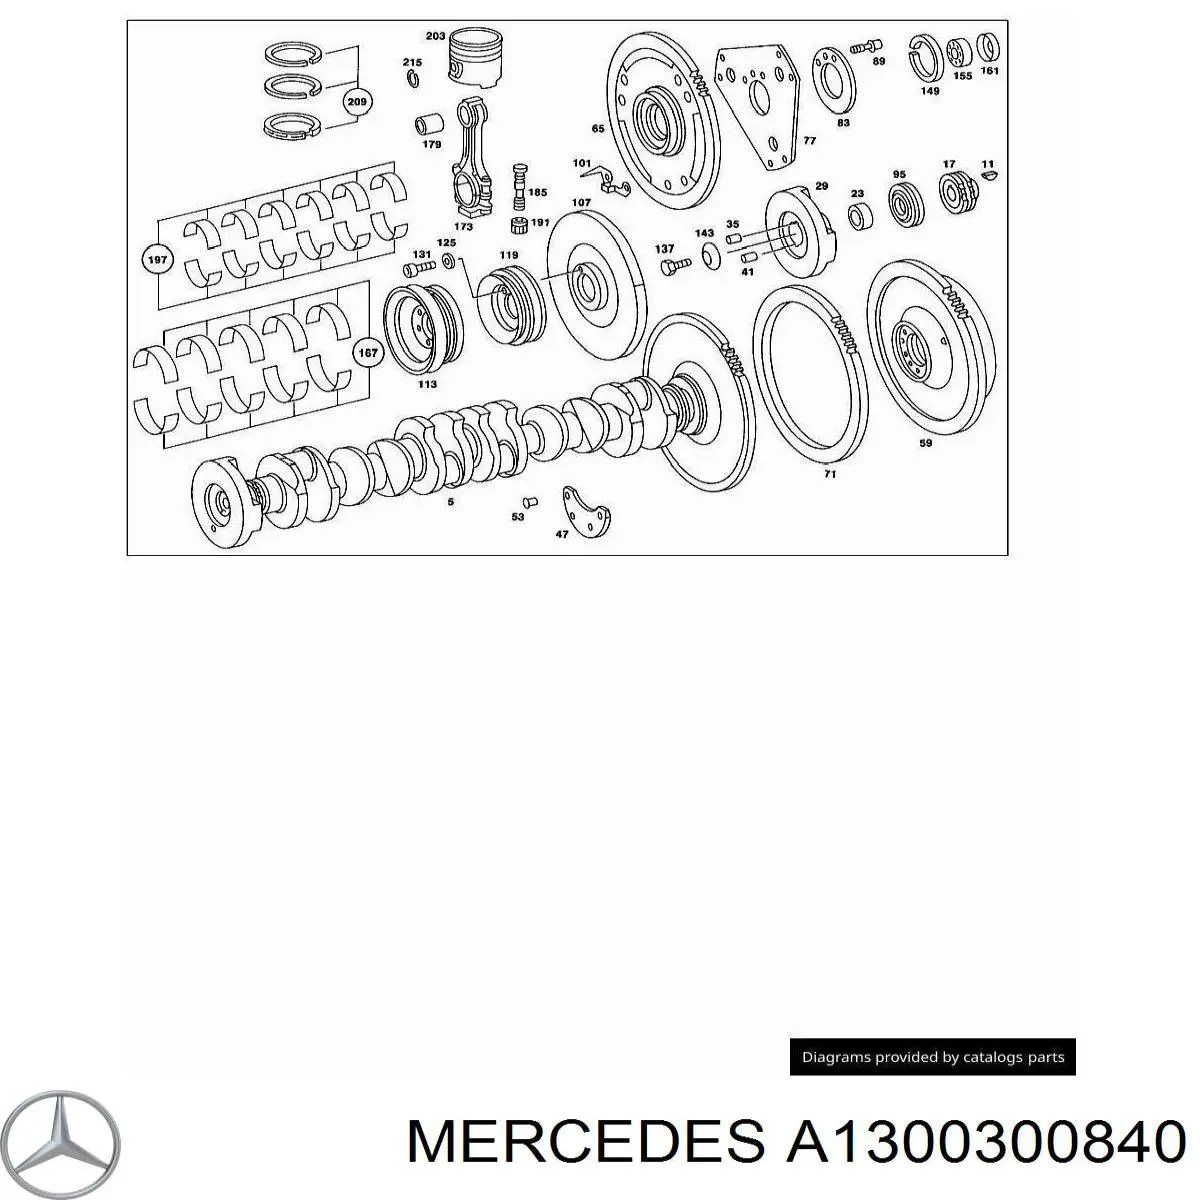 A1300300840 Mercedes juego de cojinetes de cigüeñal, cota de reparación +0,75 mm